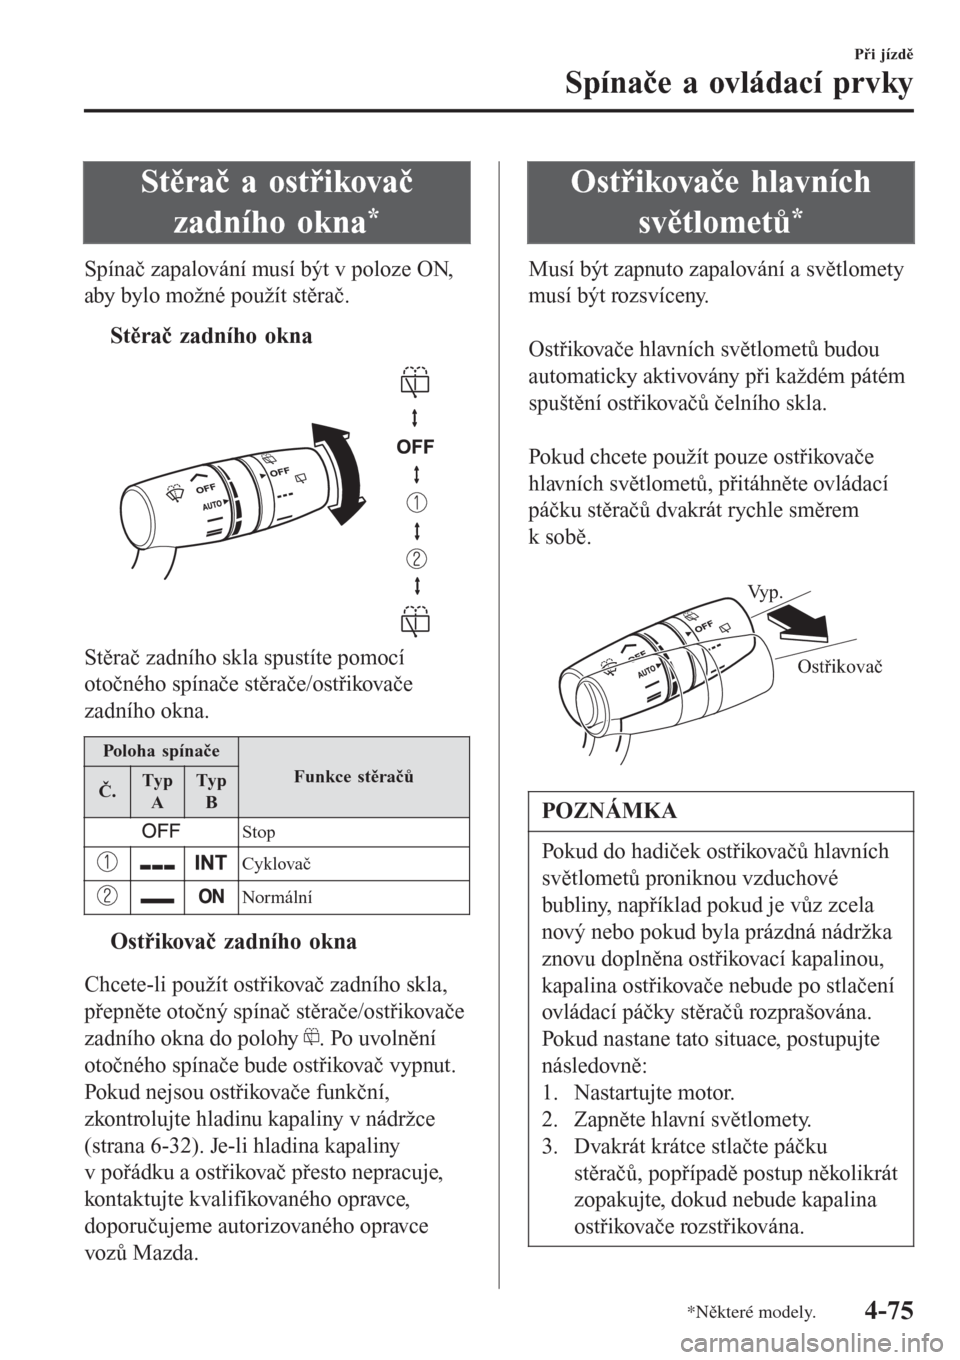 MAZDA MODEL CX-3 2015  Návod k obsluze (in Czech) Stěrač a ostřikovač
zadního okna
*
Spínač zapalování musí být v poloze ON,
aby bylo možné použít stěrač.
tStěrač zadního okna
Stěrač zadního skla spustíte pomocí
otočného sp